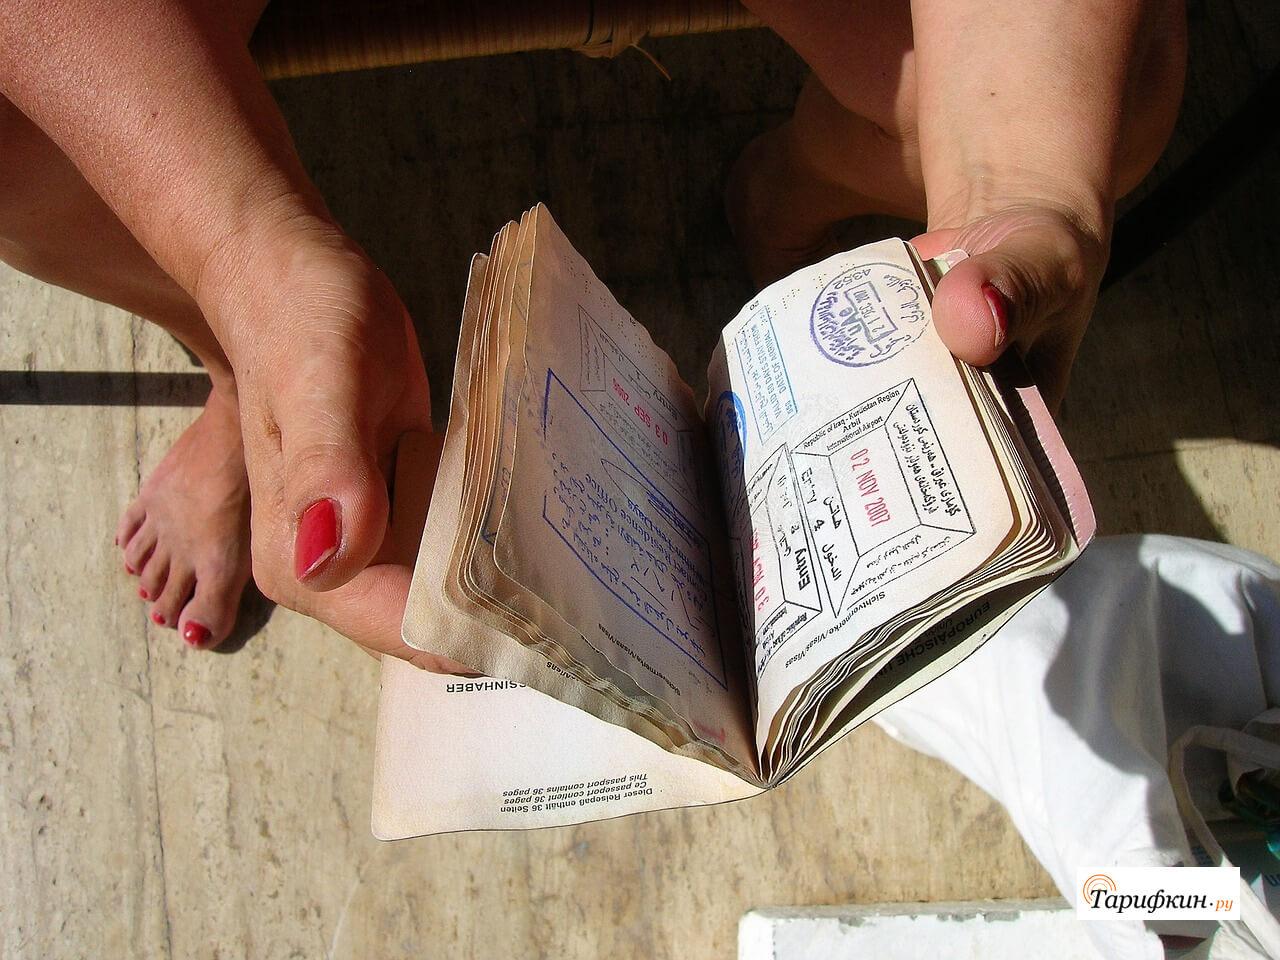 Сим-карты могут заменить паспорта – операторы заработают миллиарды